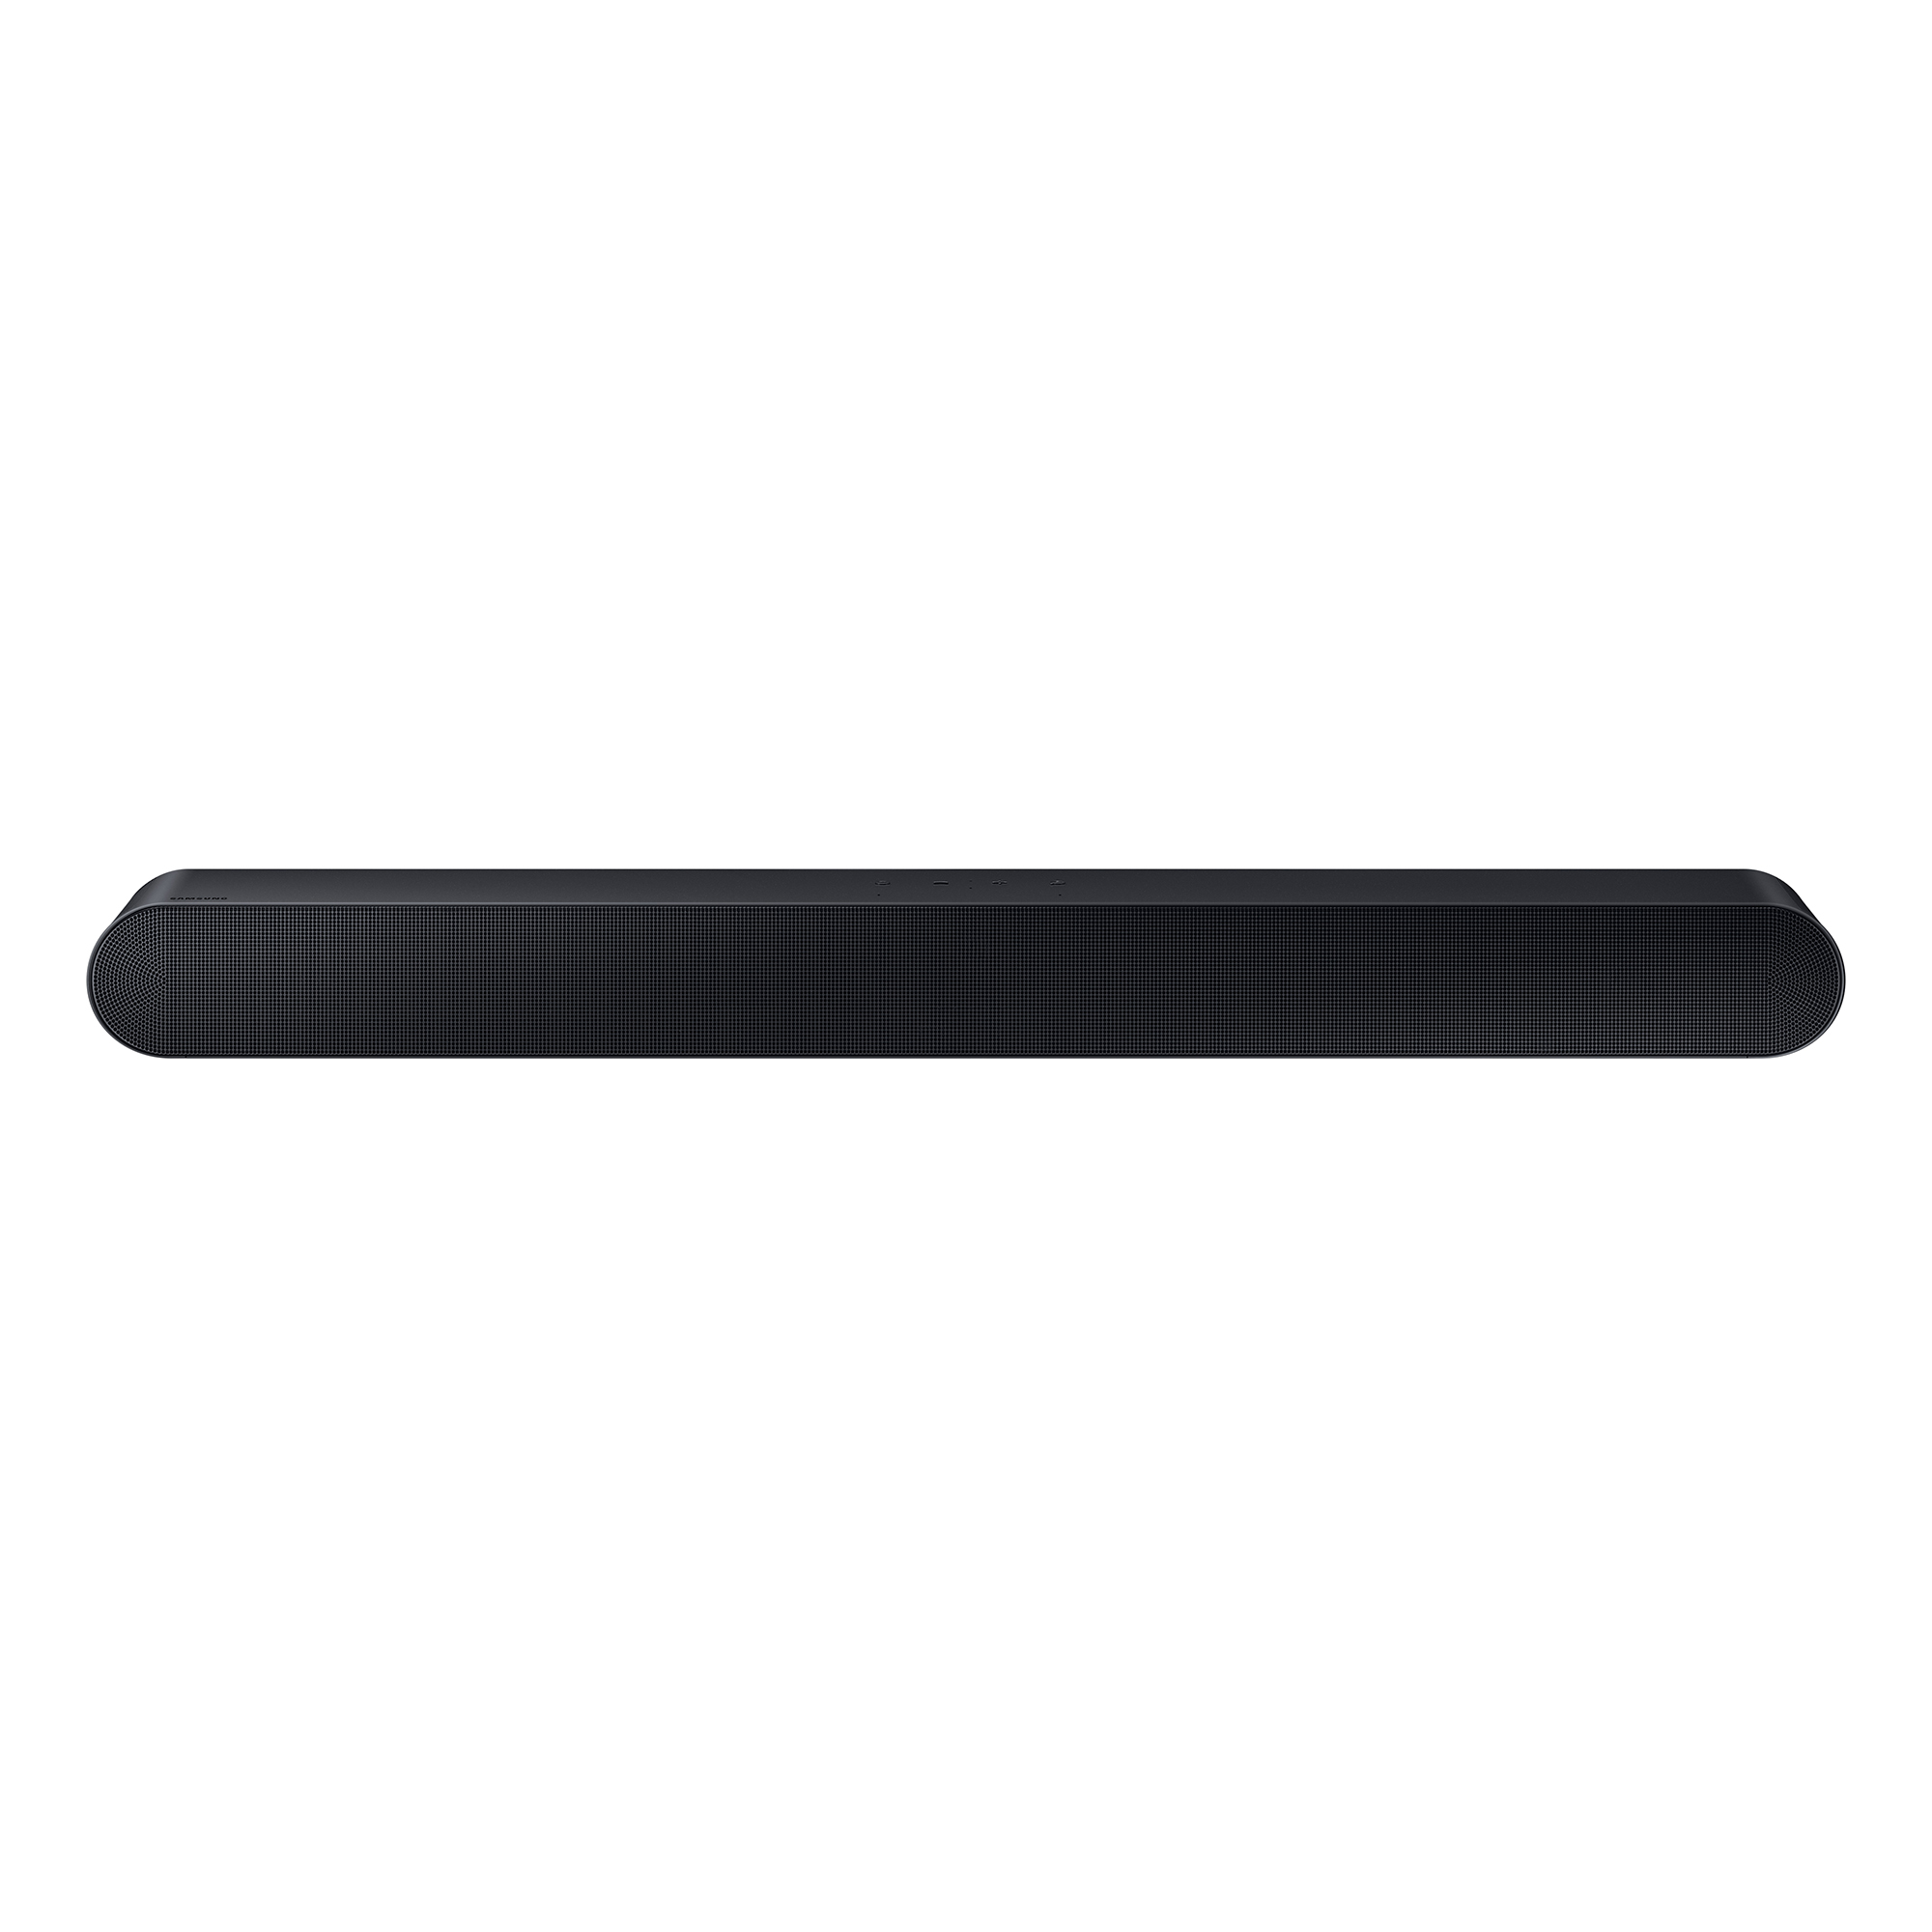 Samsung 5.0Ch All-in-One Soundbar Alexa Voice Control